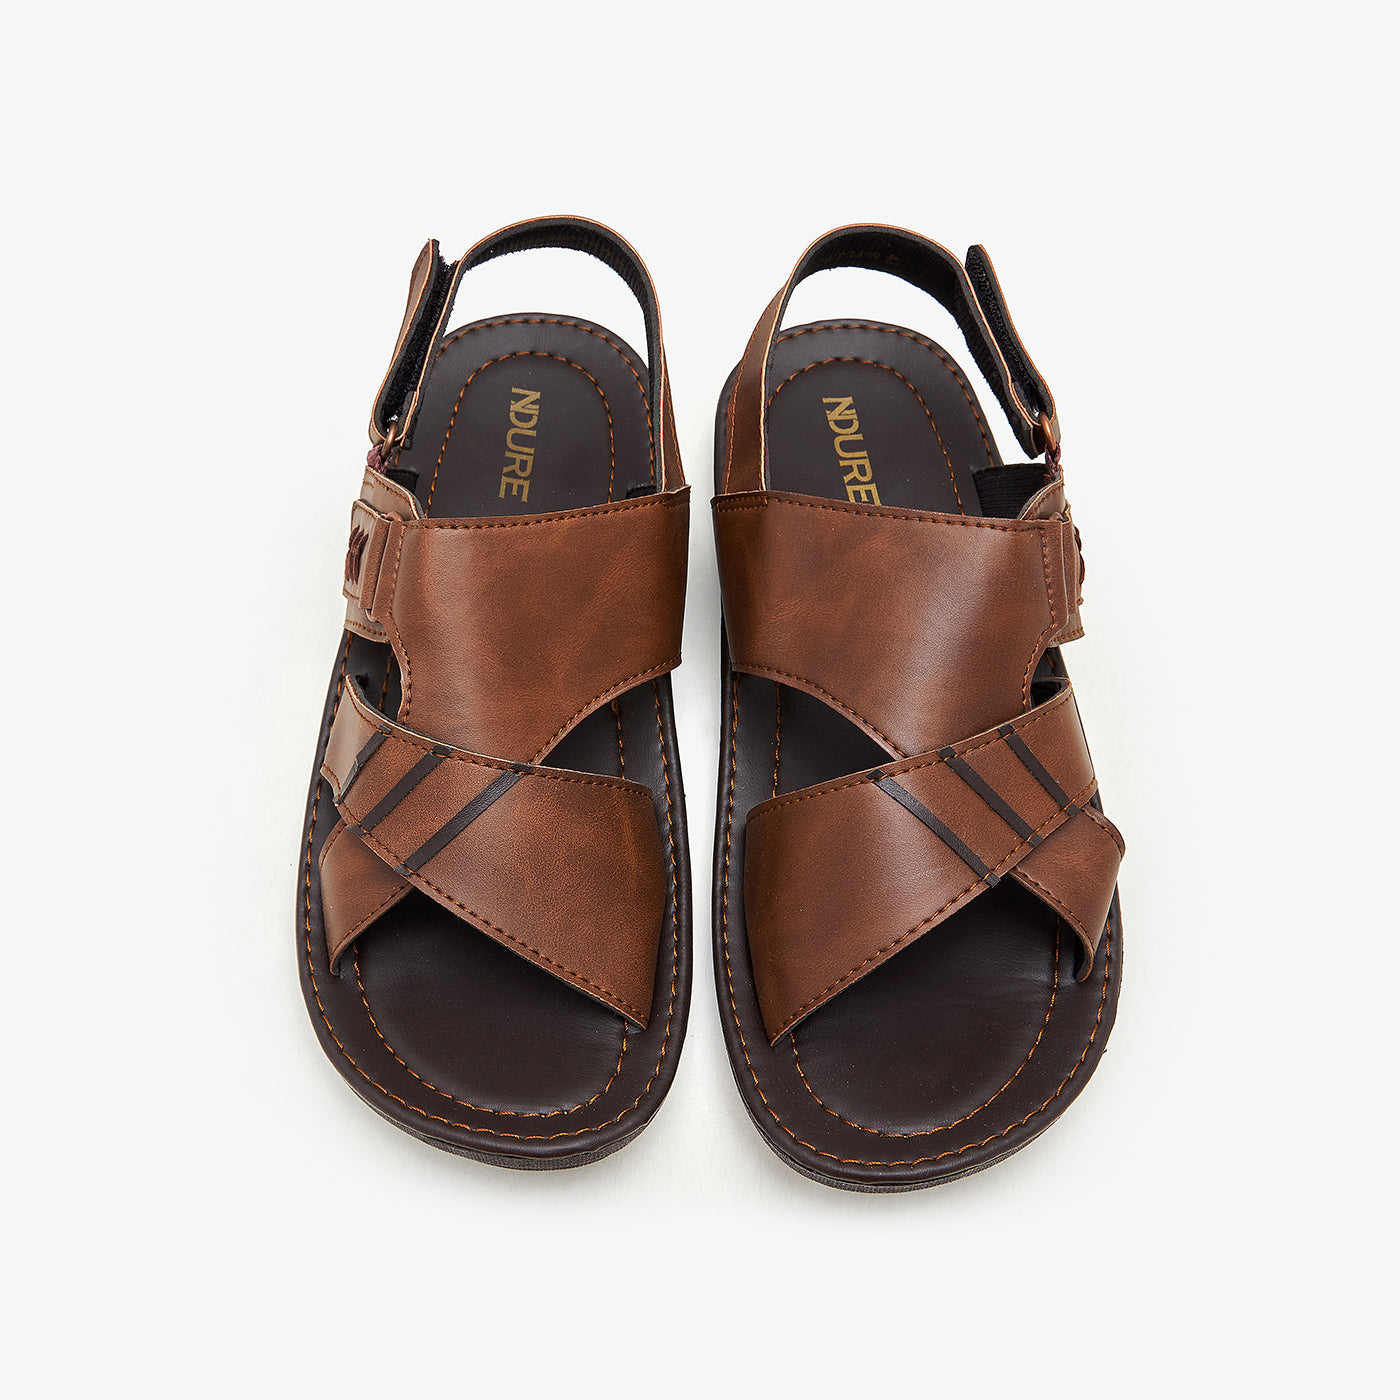 Buy Men Sandals & Peshawaris - Men's Daily Wear Sandals M-PL-CRZ-0018 ...